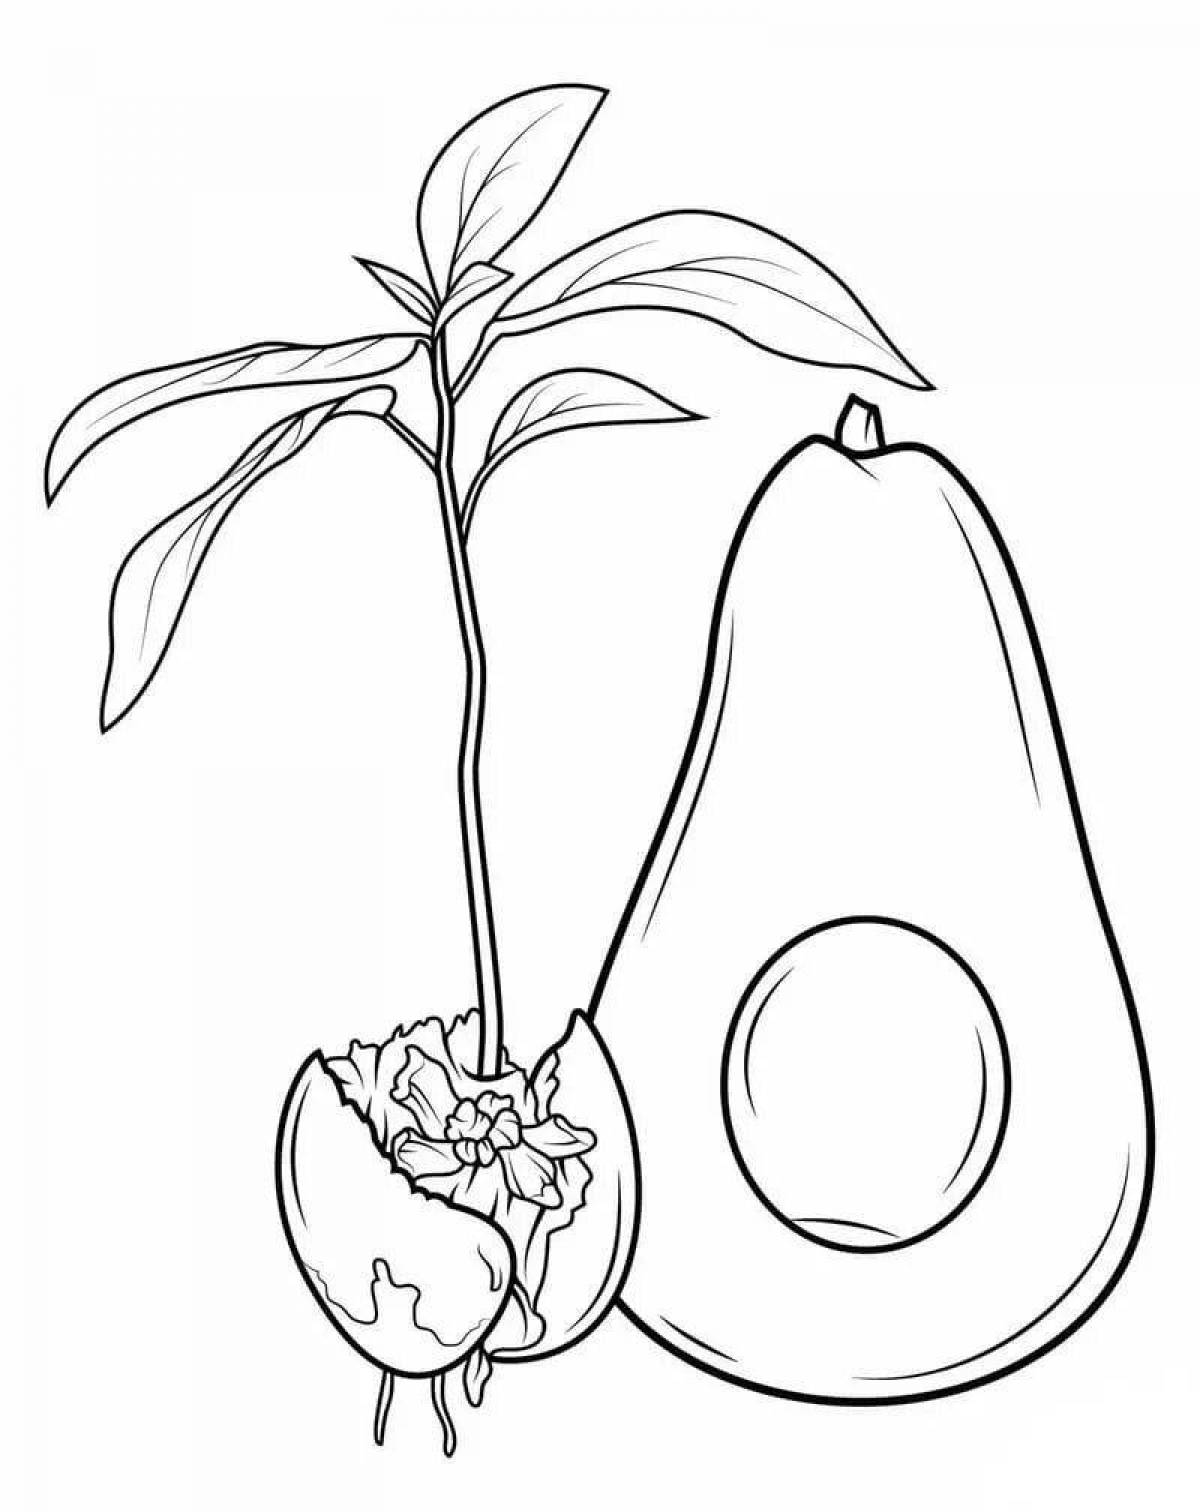 Hypnotic avocado drawing